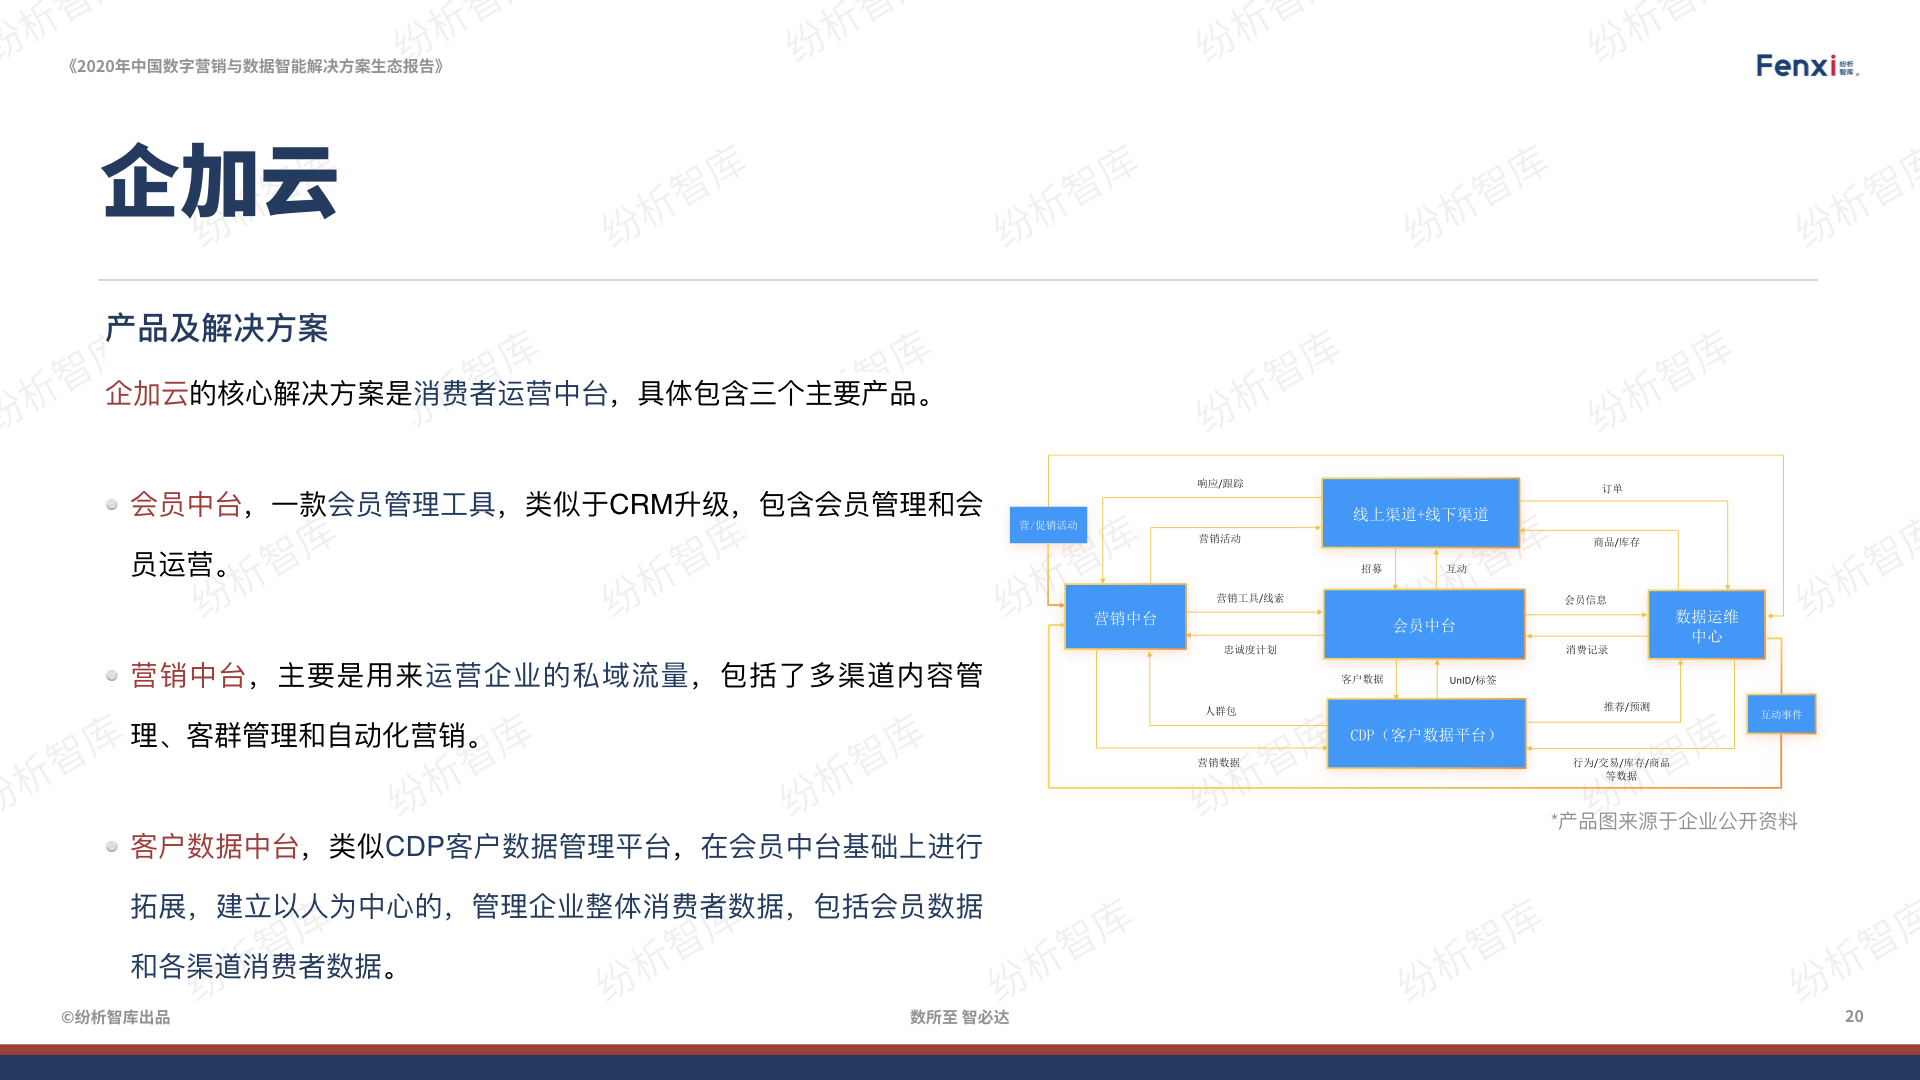 【V8】《2020年中国数字营销与数据智能解决方案生态图报告》0106.020.jpeg